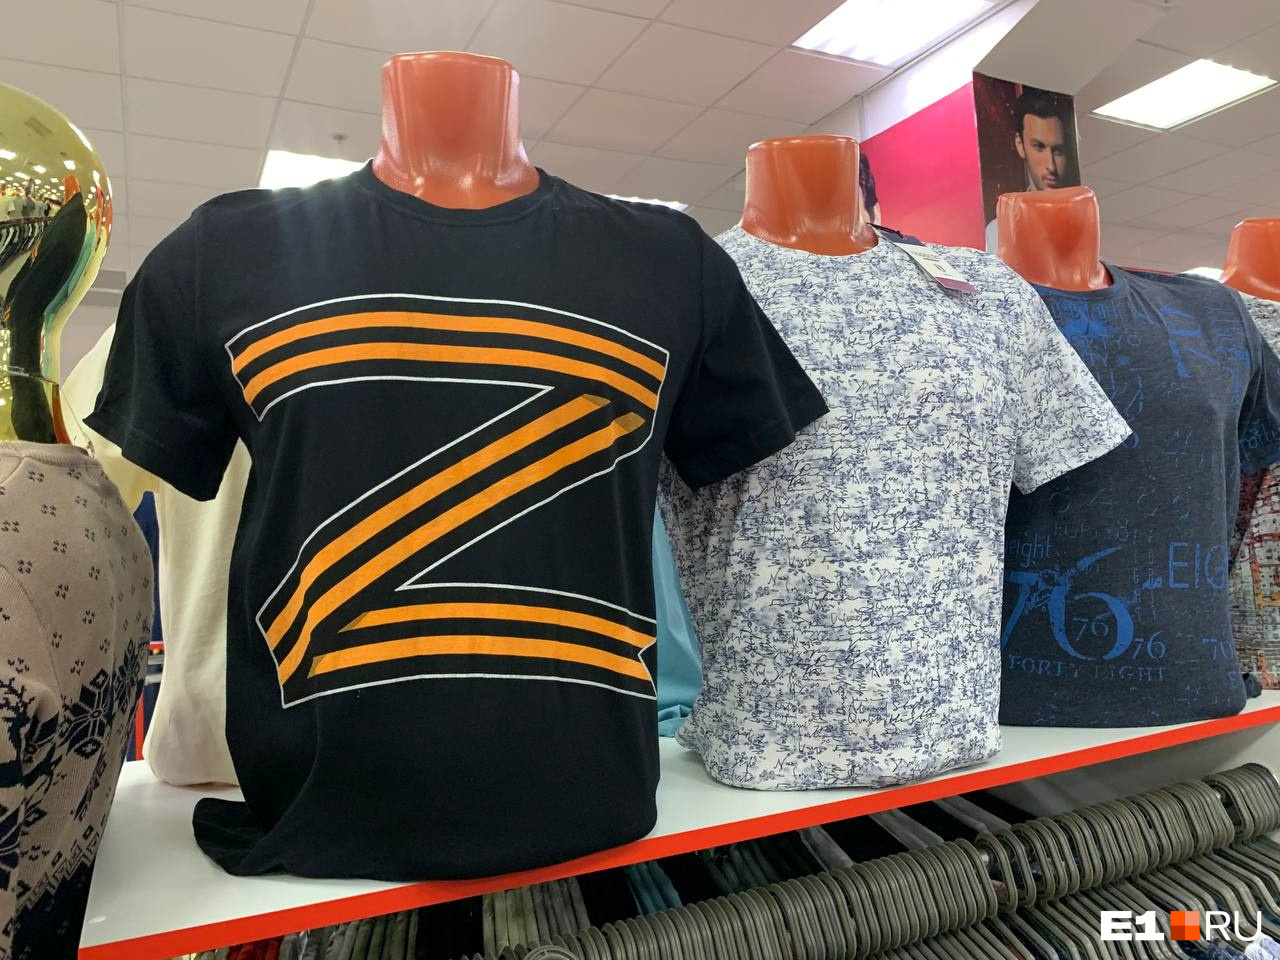 В продаже есть футболки с буквой Z в виде георгиевской ленты